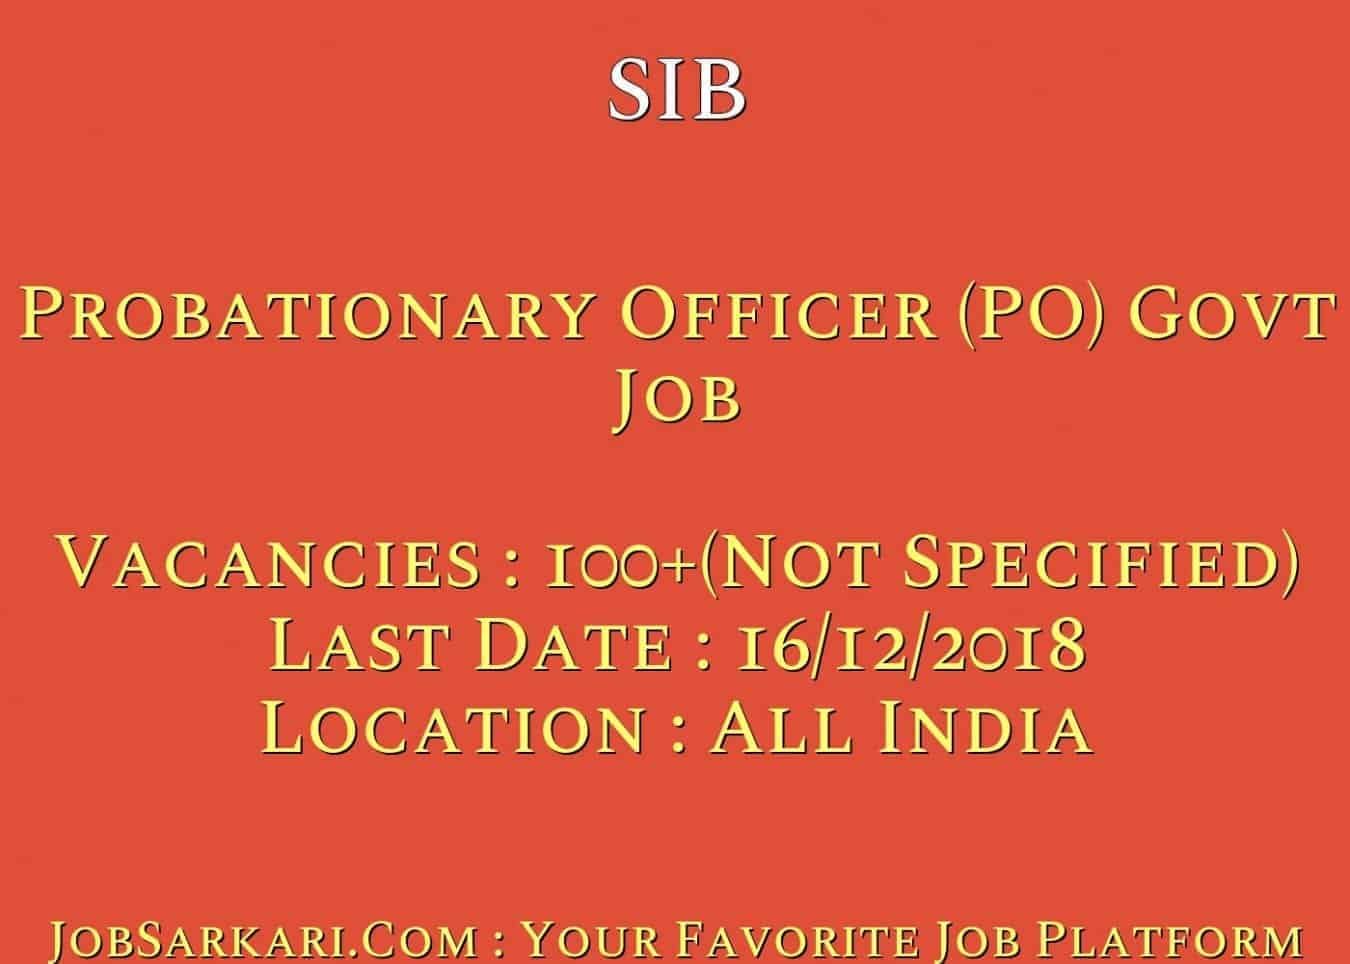 SIB Recruitment 2018 for Probationary Officer (PO) Govt Job